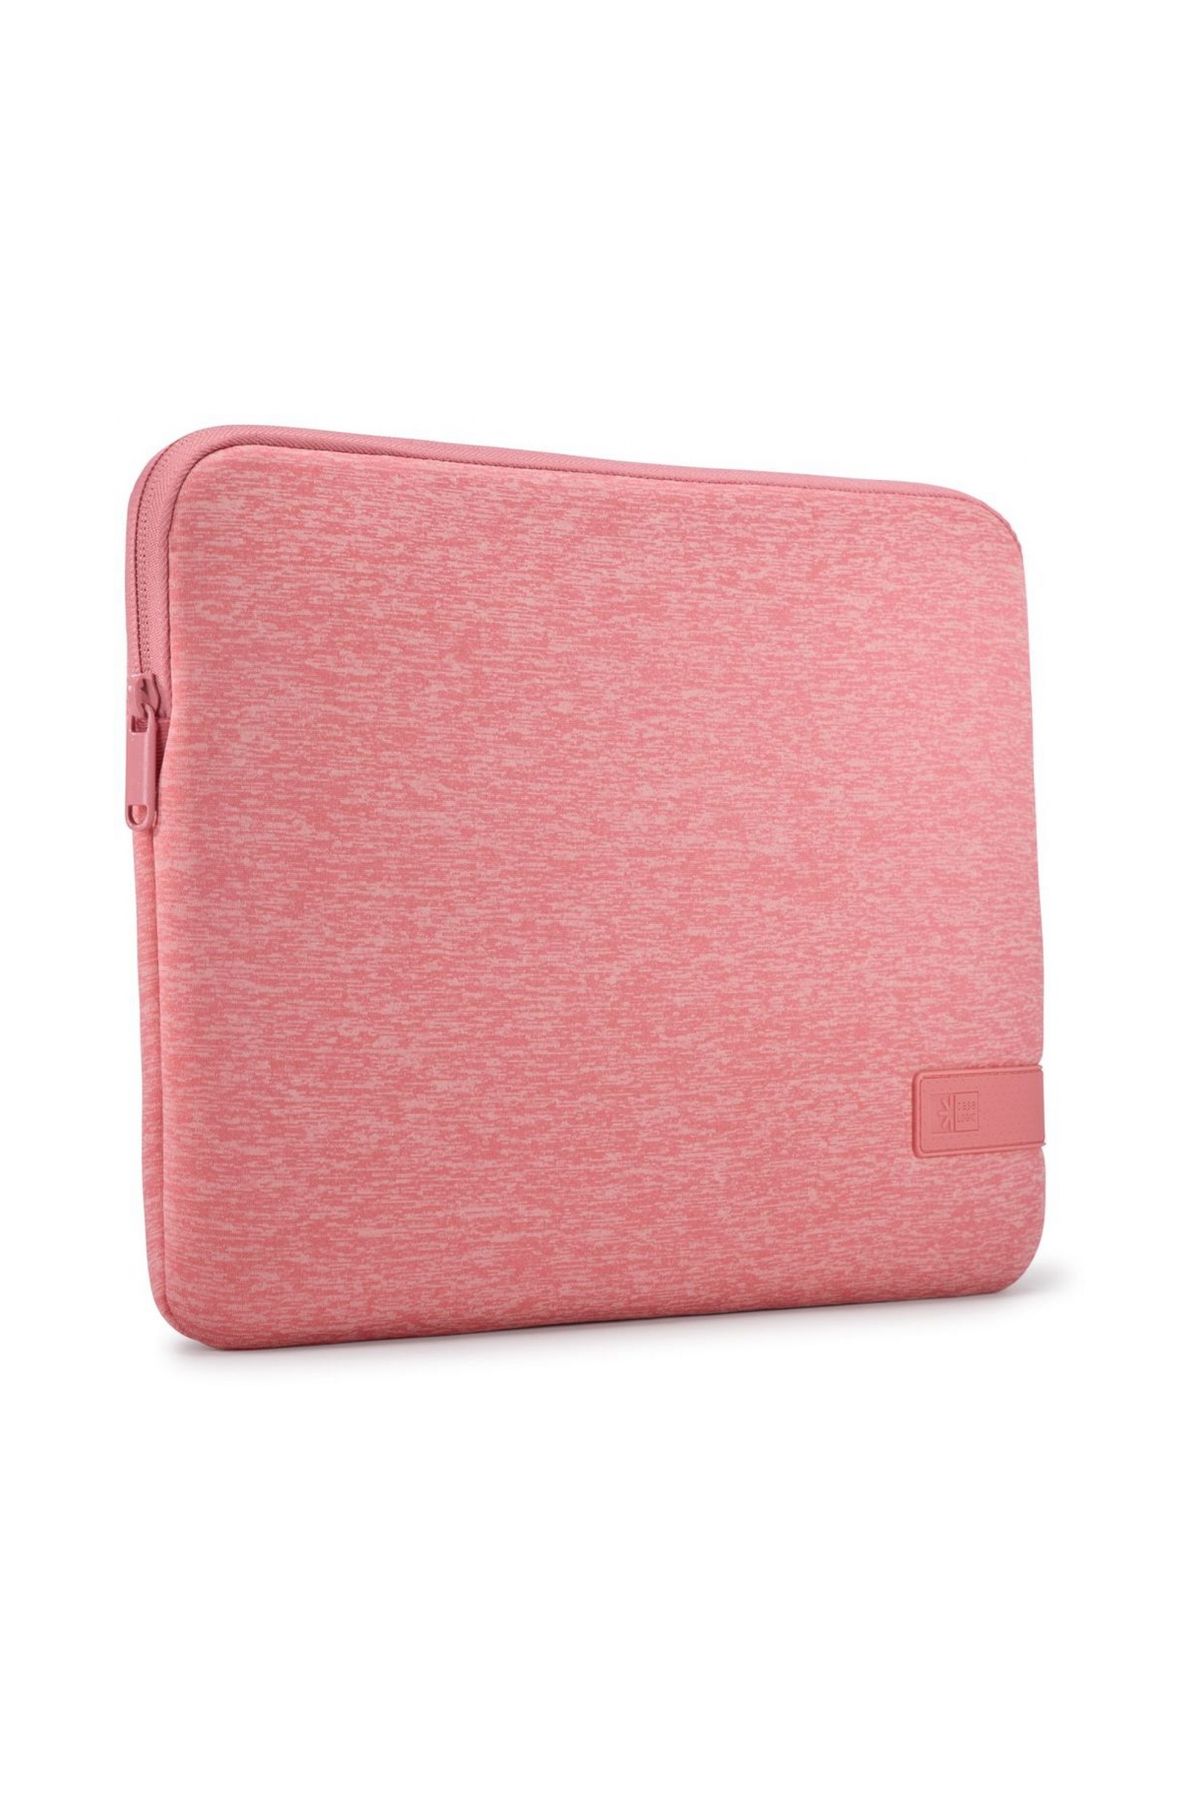 Case Logic Reflect MacBook Kılıfı 13 inç - Pomelo Pink